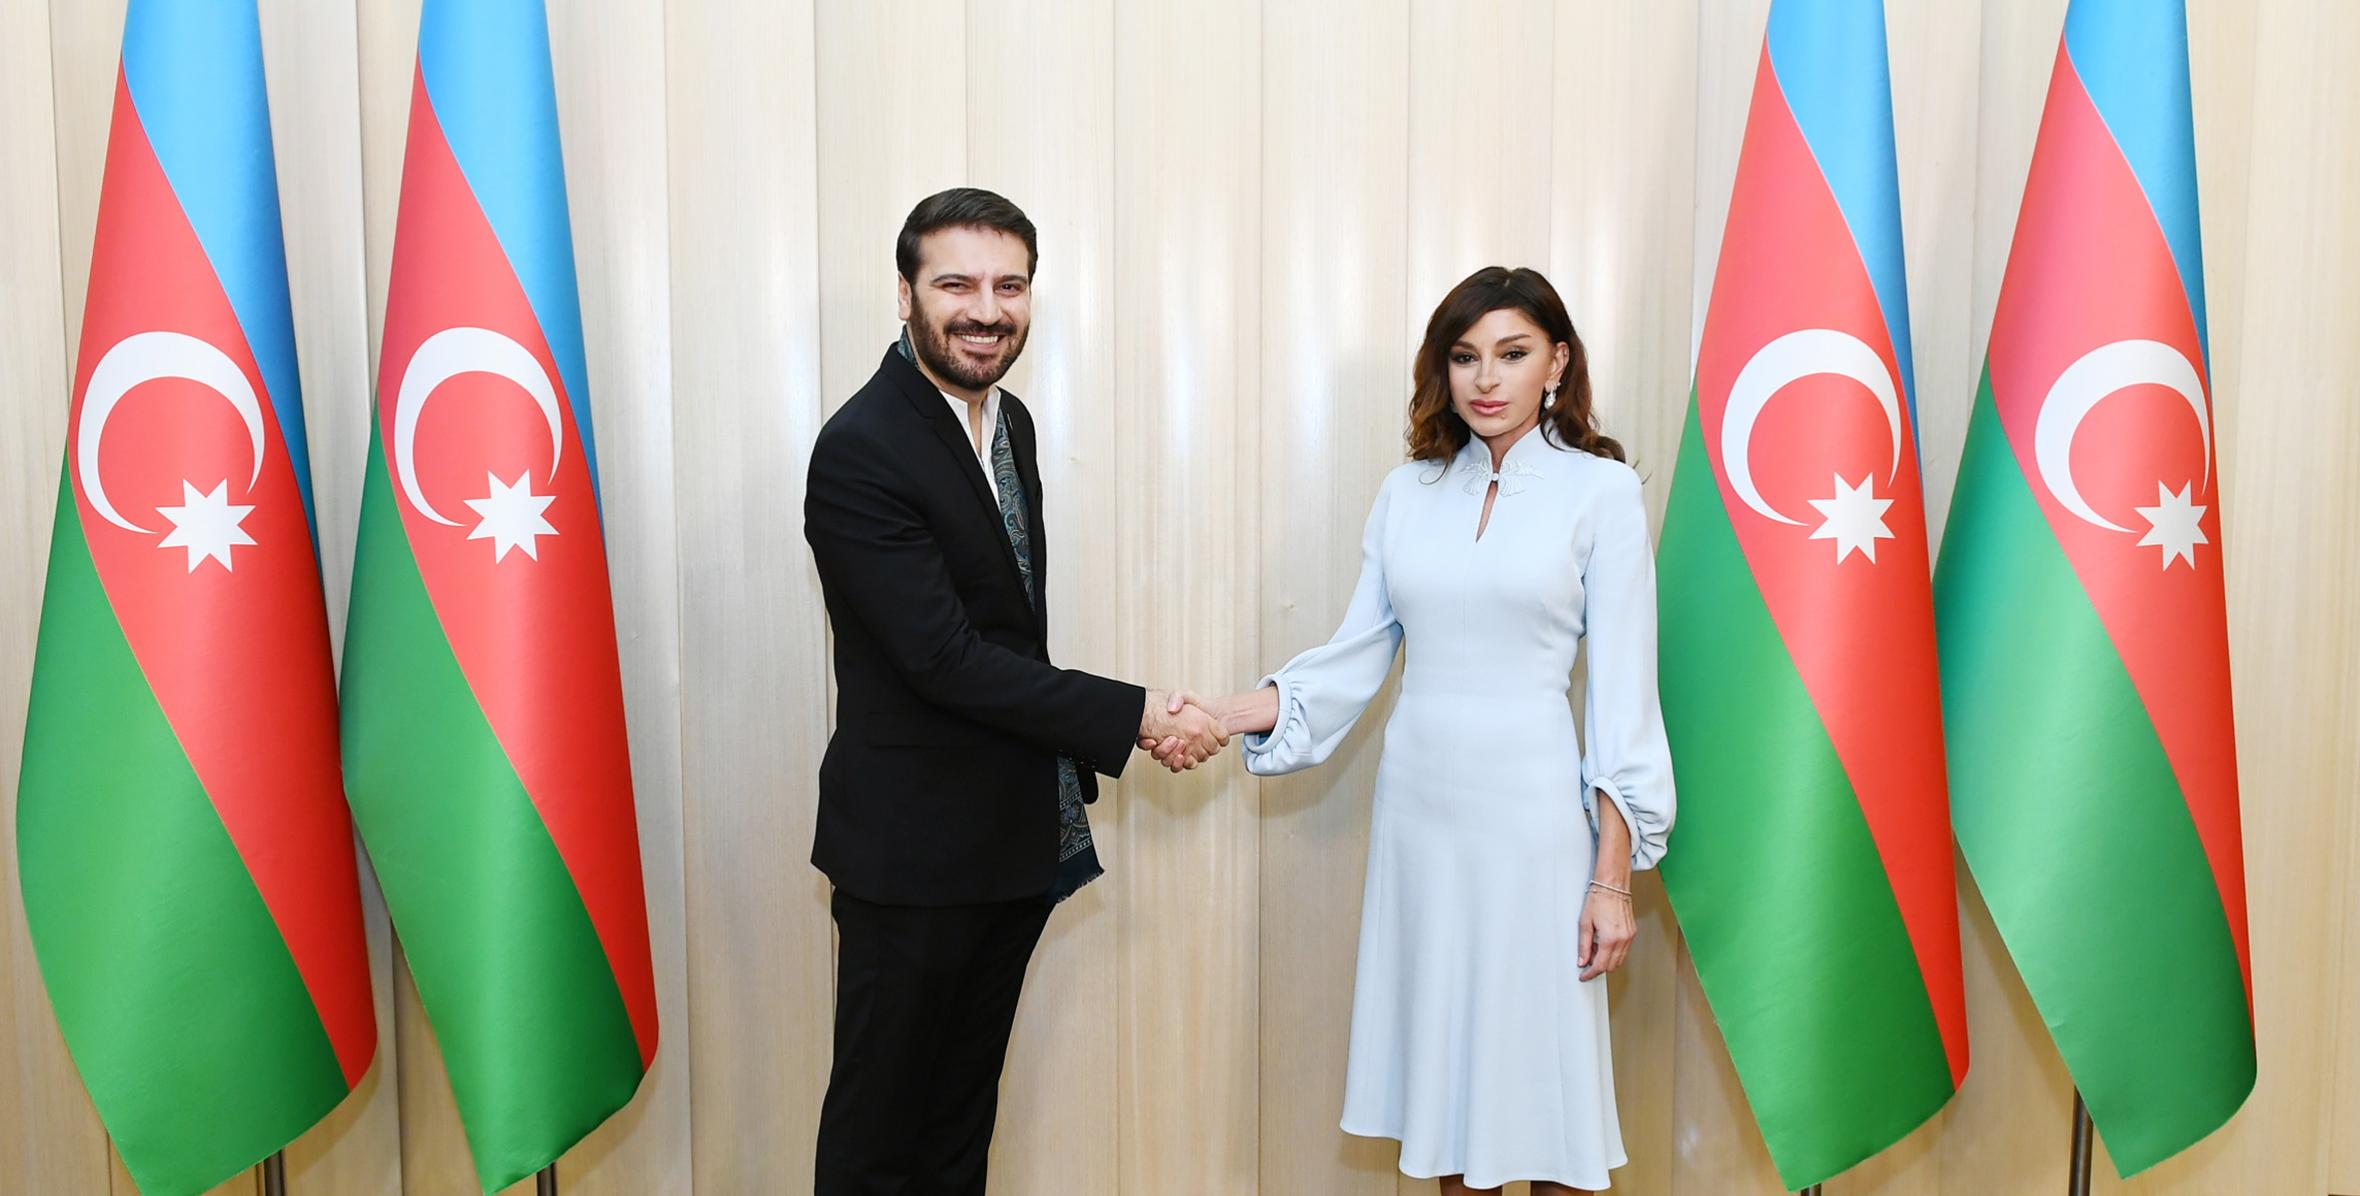 Первый вице-президент Мехрибан Алиева вручила известному певцу и композитору Сами Юсуфу почетный диплом Президента Азербайджана